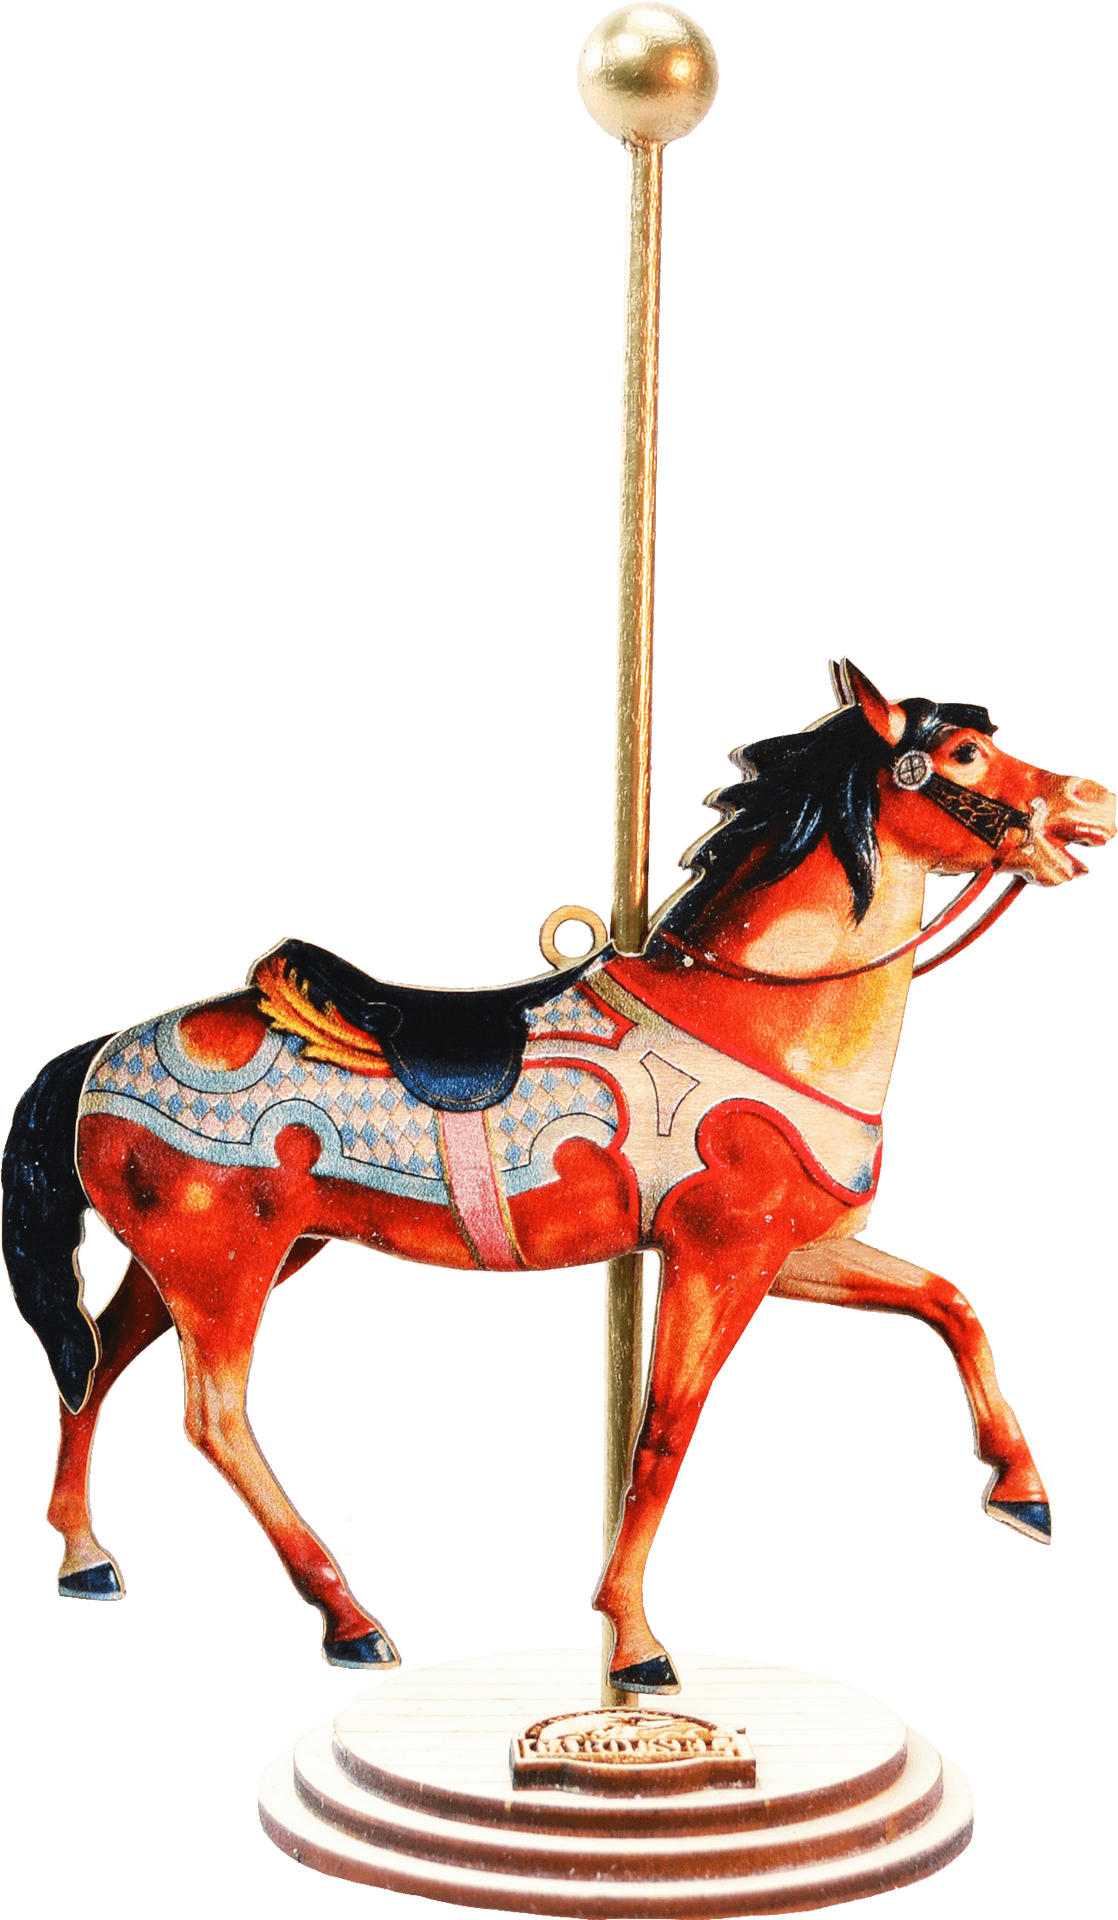 Vintage Carousel Horse Illustration PNG image